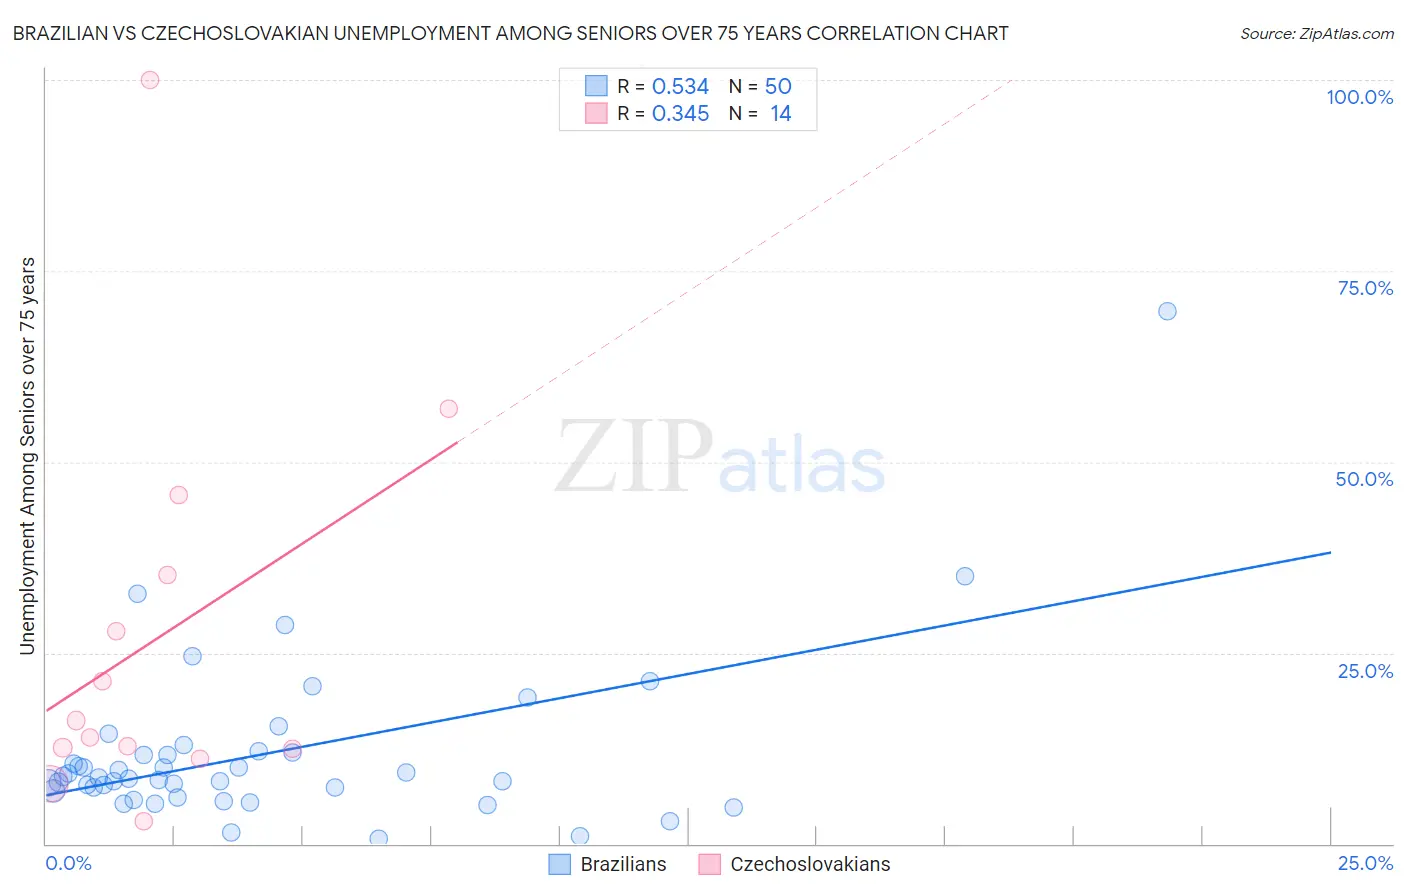 Brazilian vs Czechoslovakian Unemployment Among Seniors over 75 years